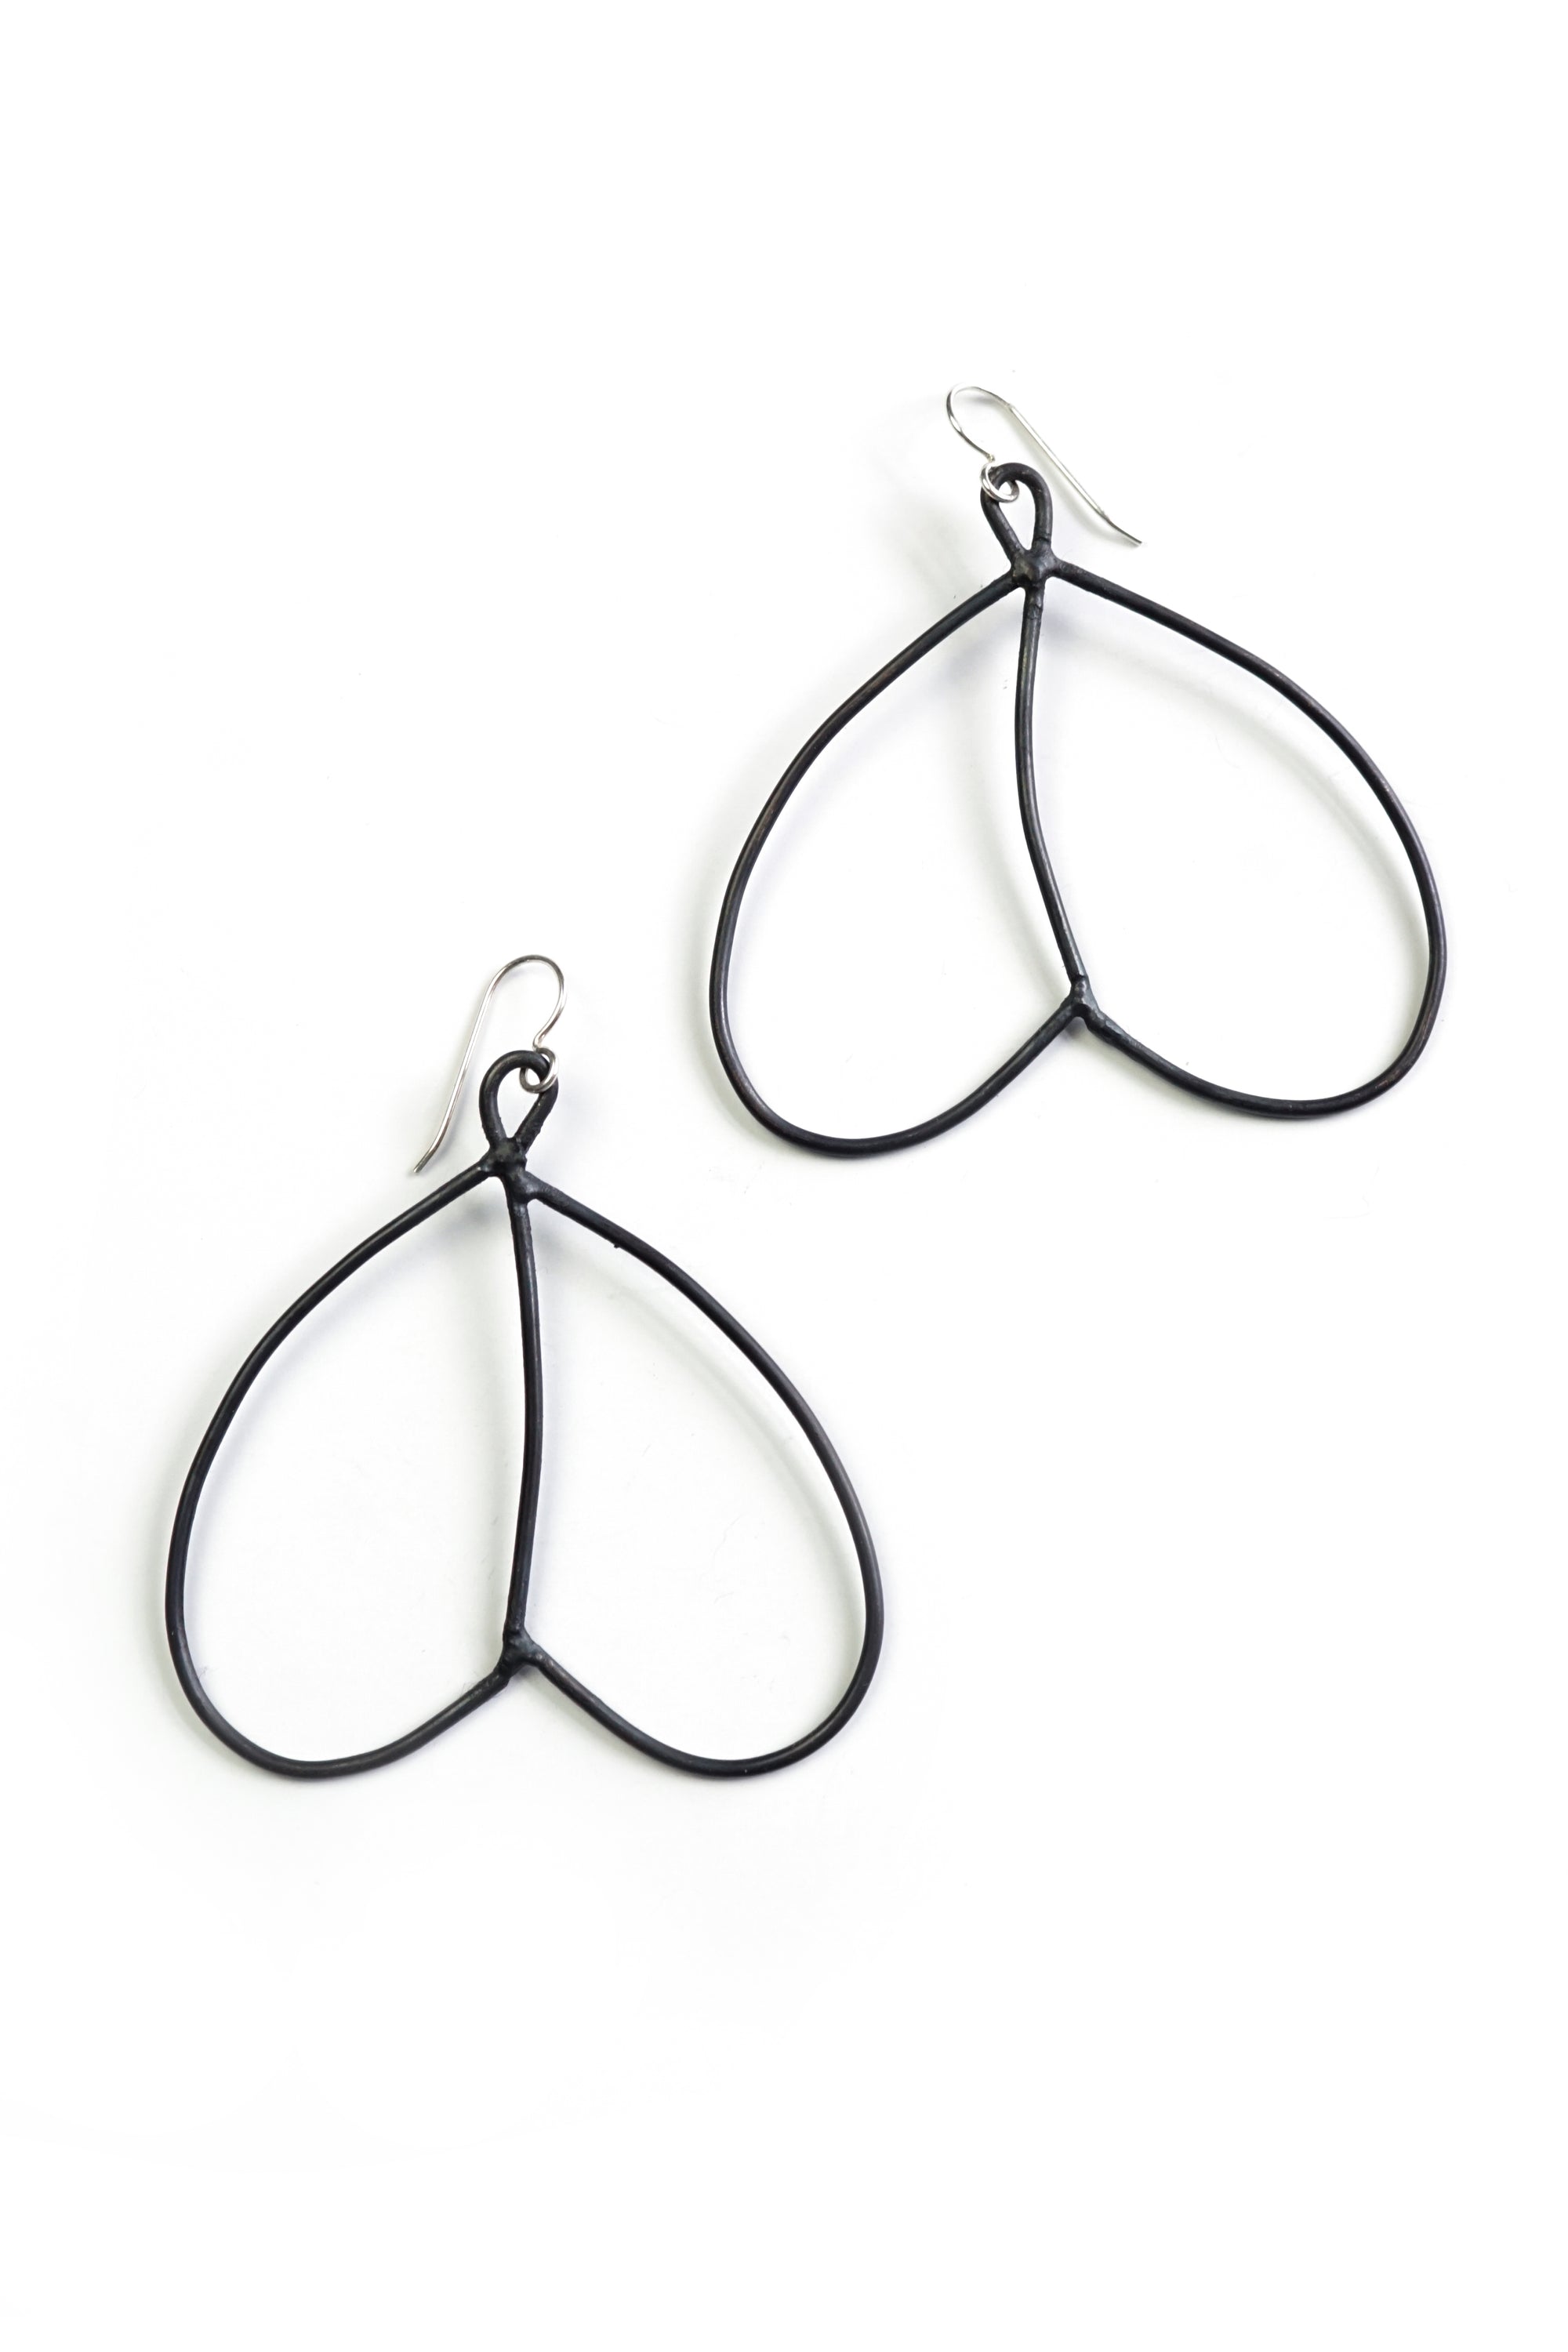 lightweight bronze wire statement earrings